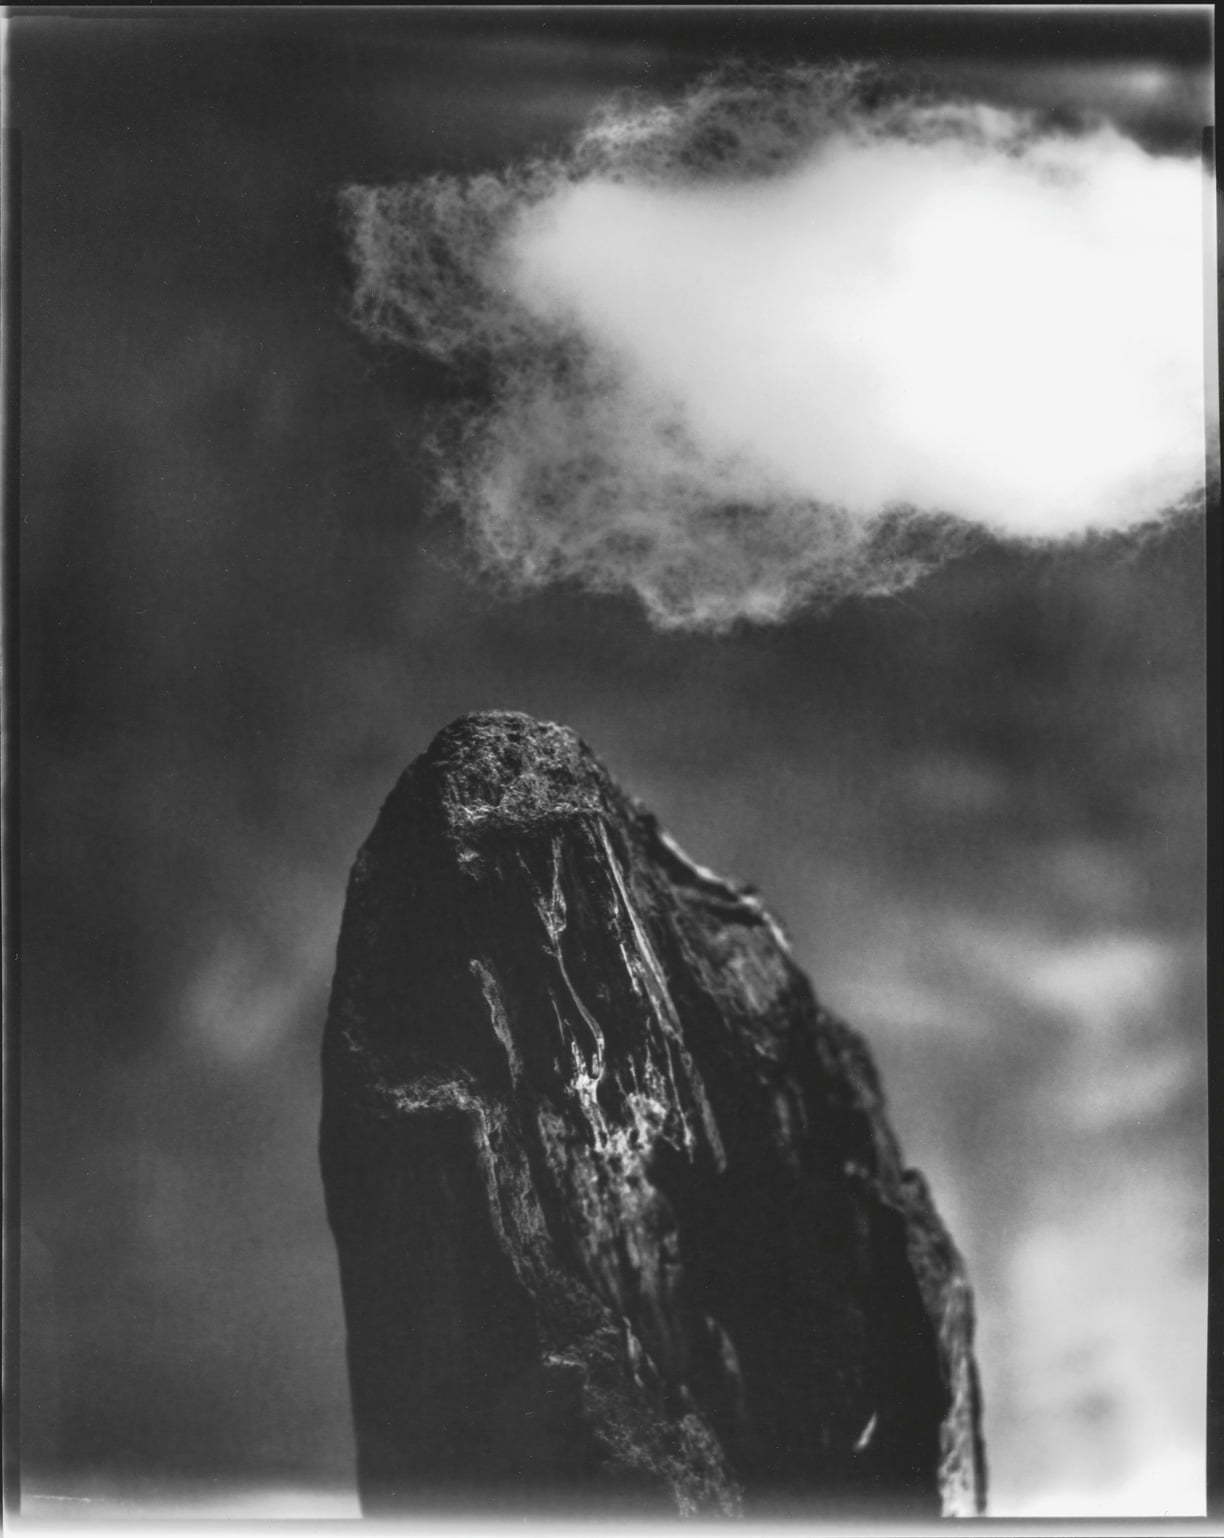 Tine Edel | Der Berg, 2016 | Belichtung eines 8 x10“ Papiernegativ, 24 x 3 0 cm analoges Fotopapier von Adox 55